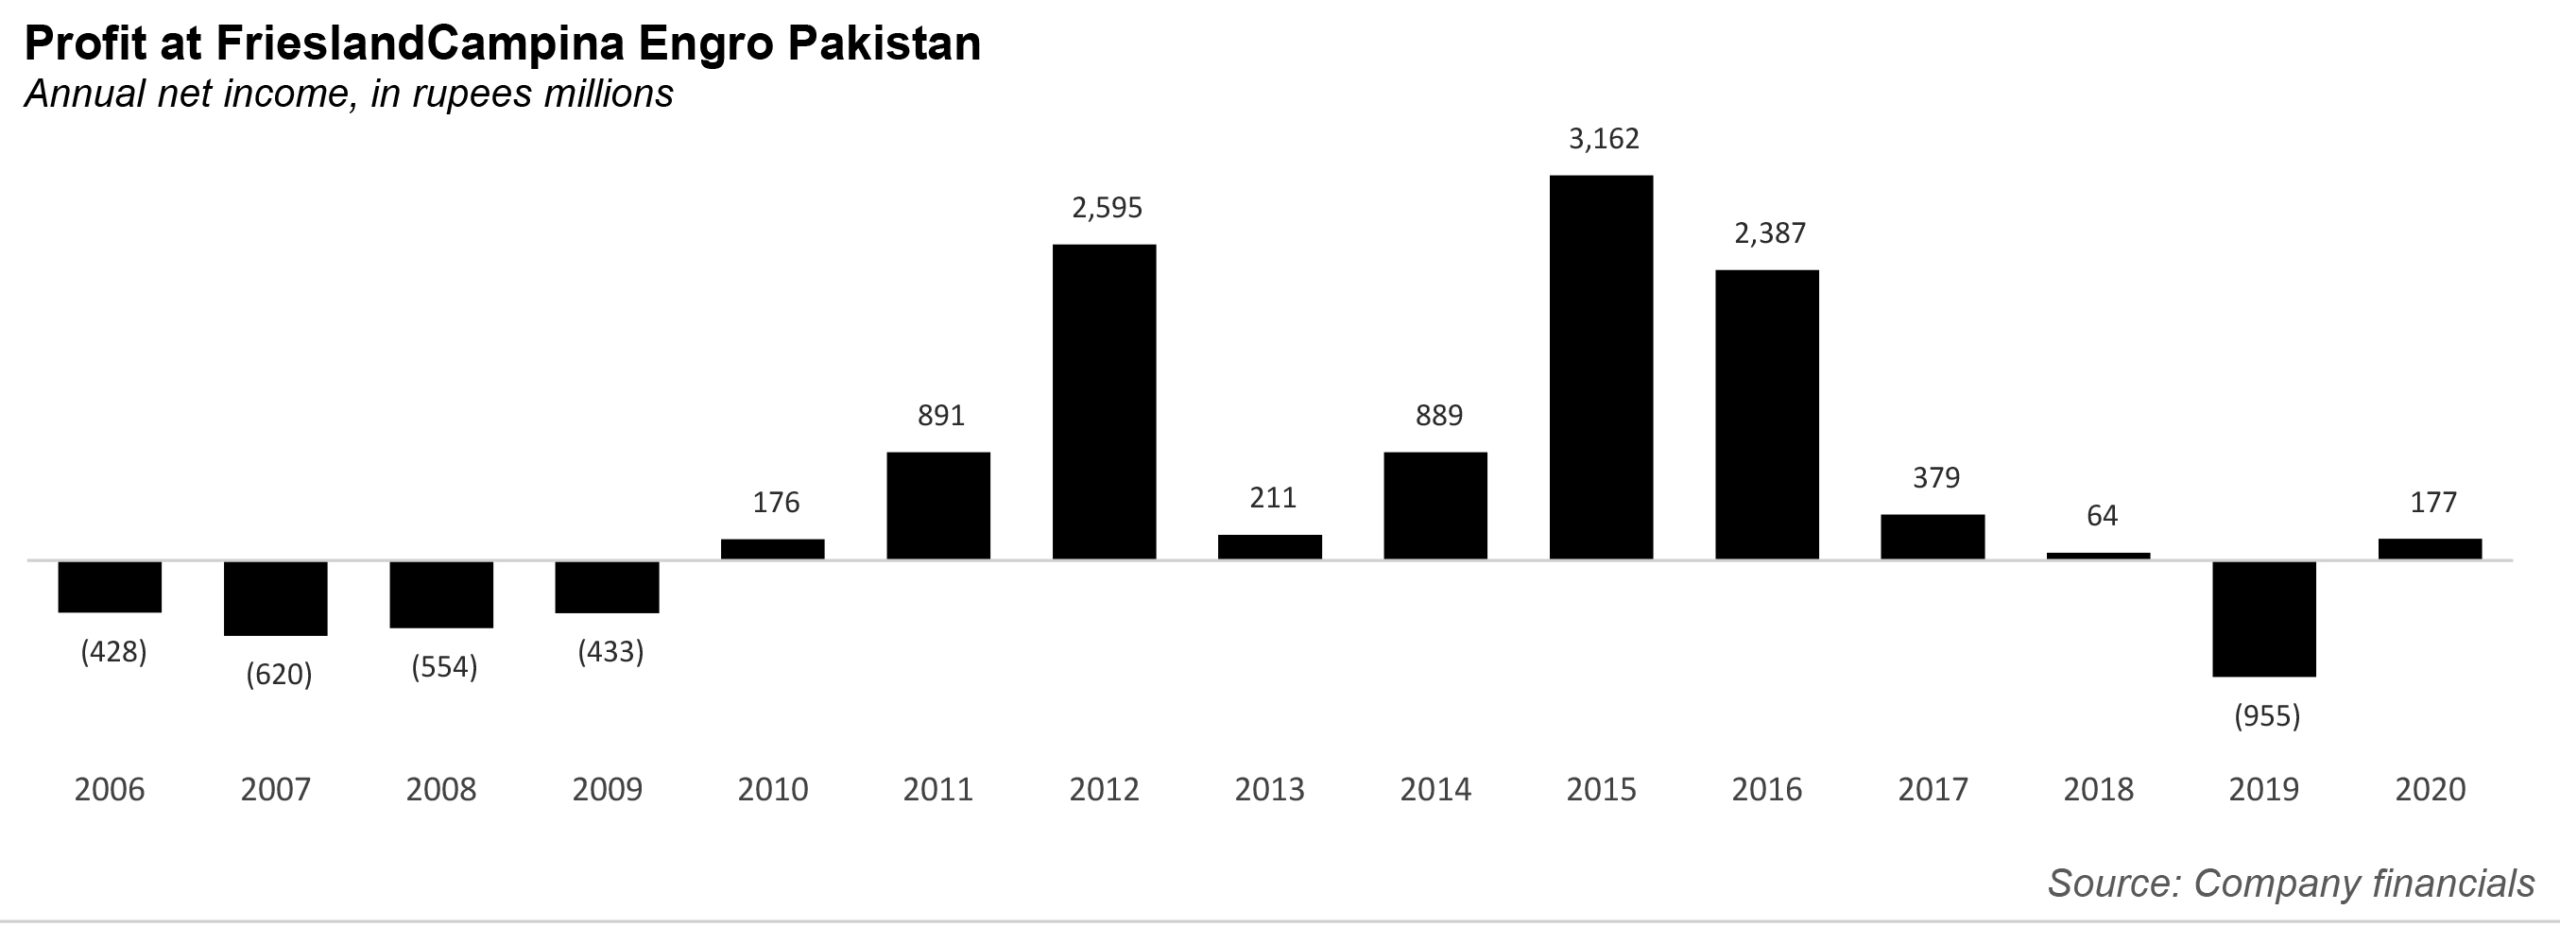 fmcg industry analysis in pakistan